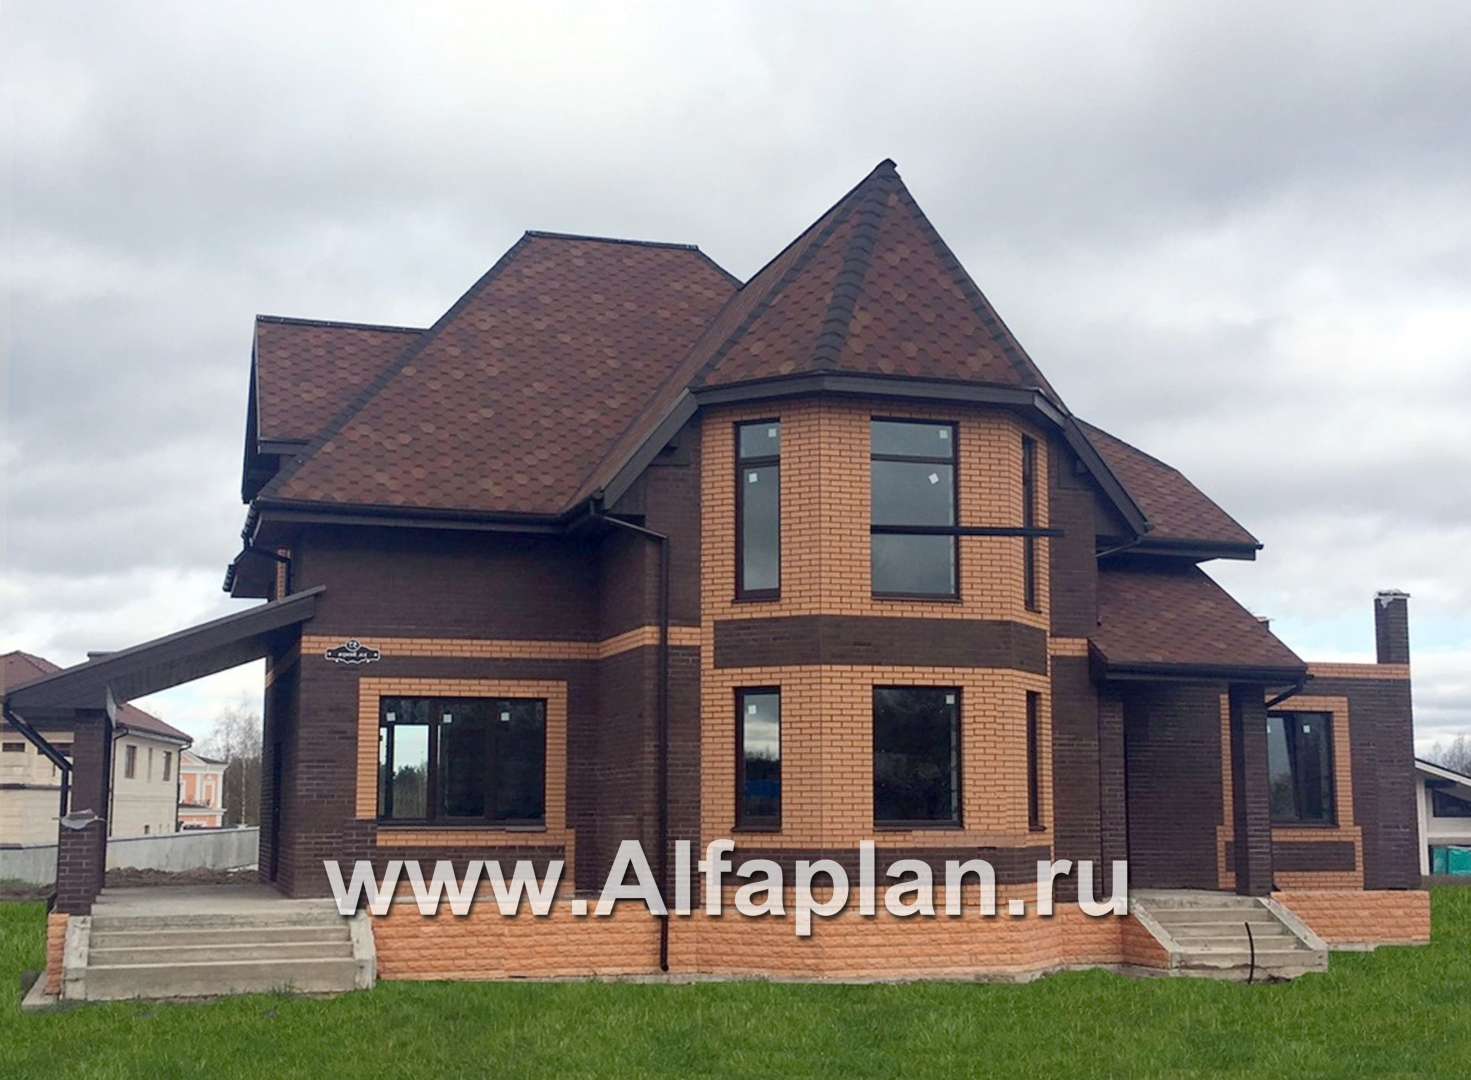 Проекты домов Альфаплан - «Шереметьев» - проект дома с большой открытой террасой - дополнительное изображение №2